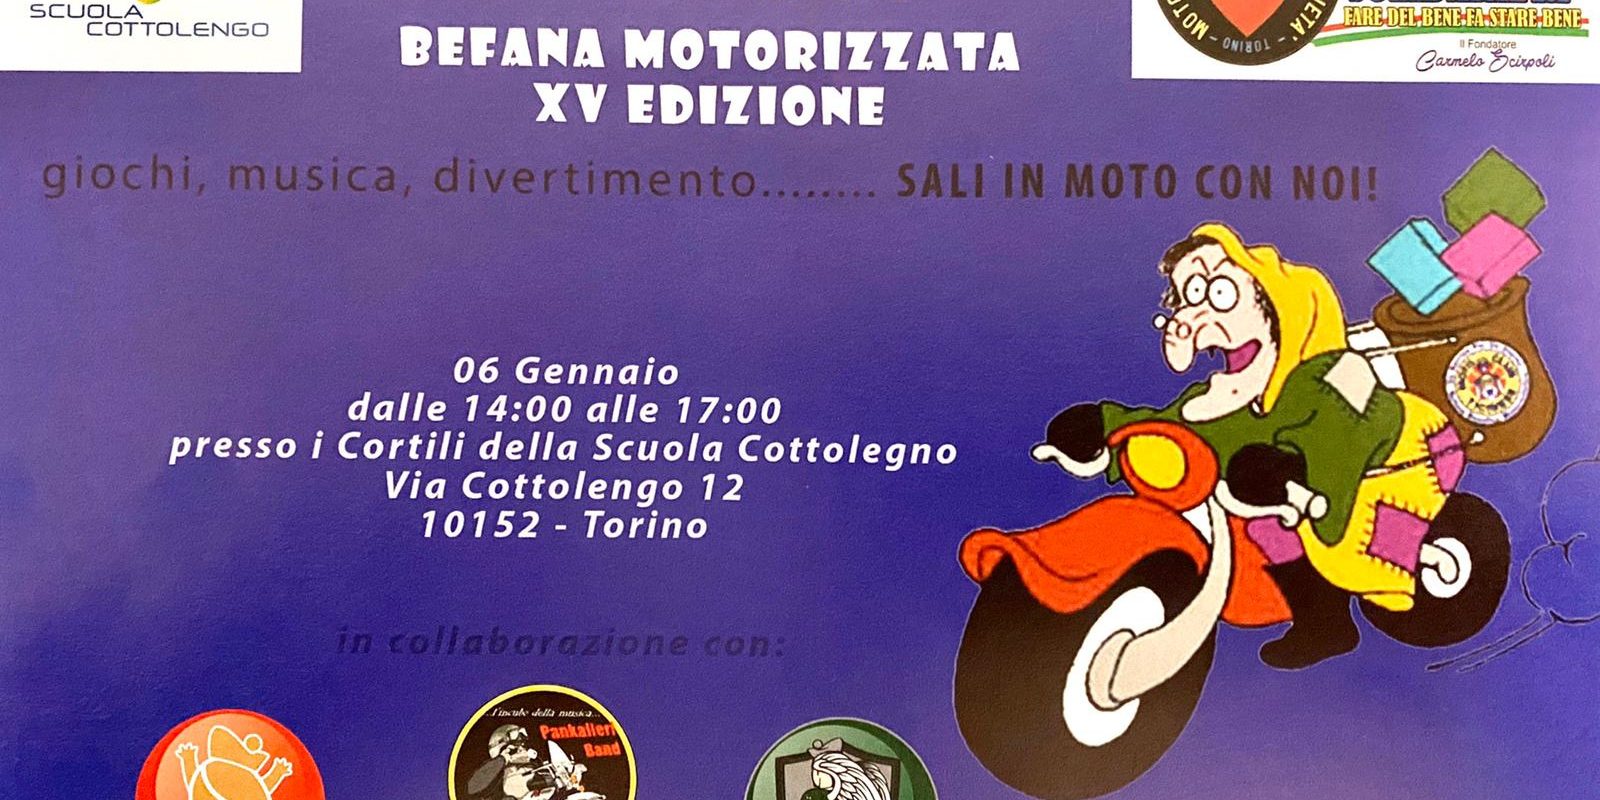 Alla Piccola Casa di Torino la Befana Motorizzata - Cottolengo